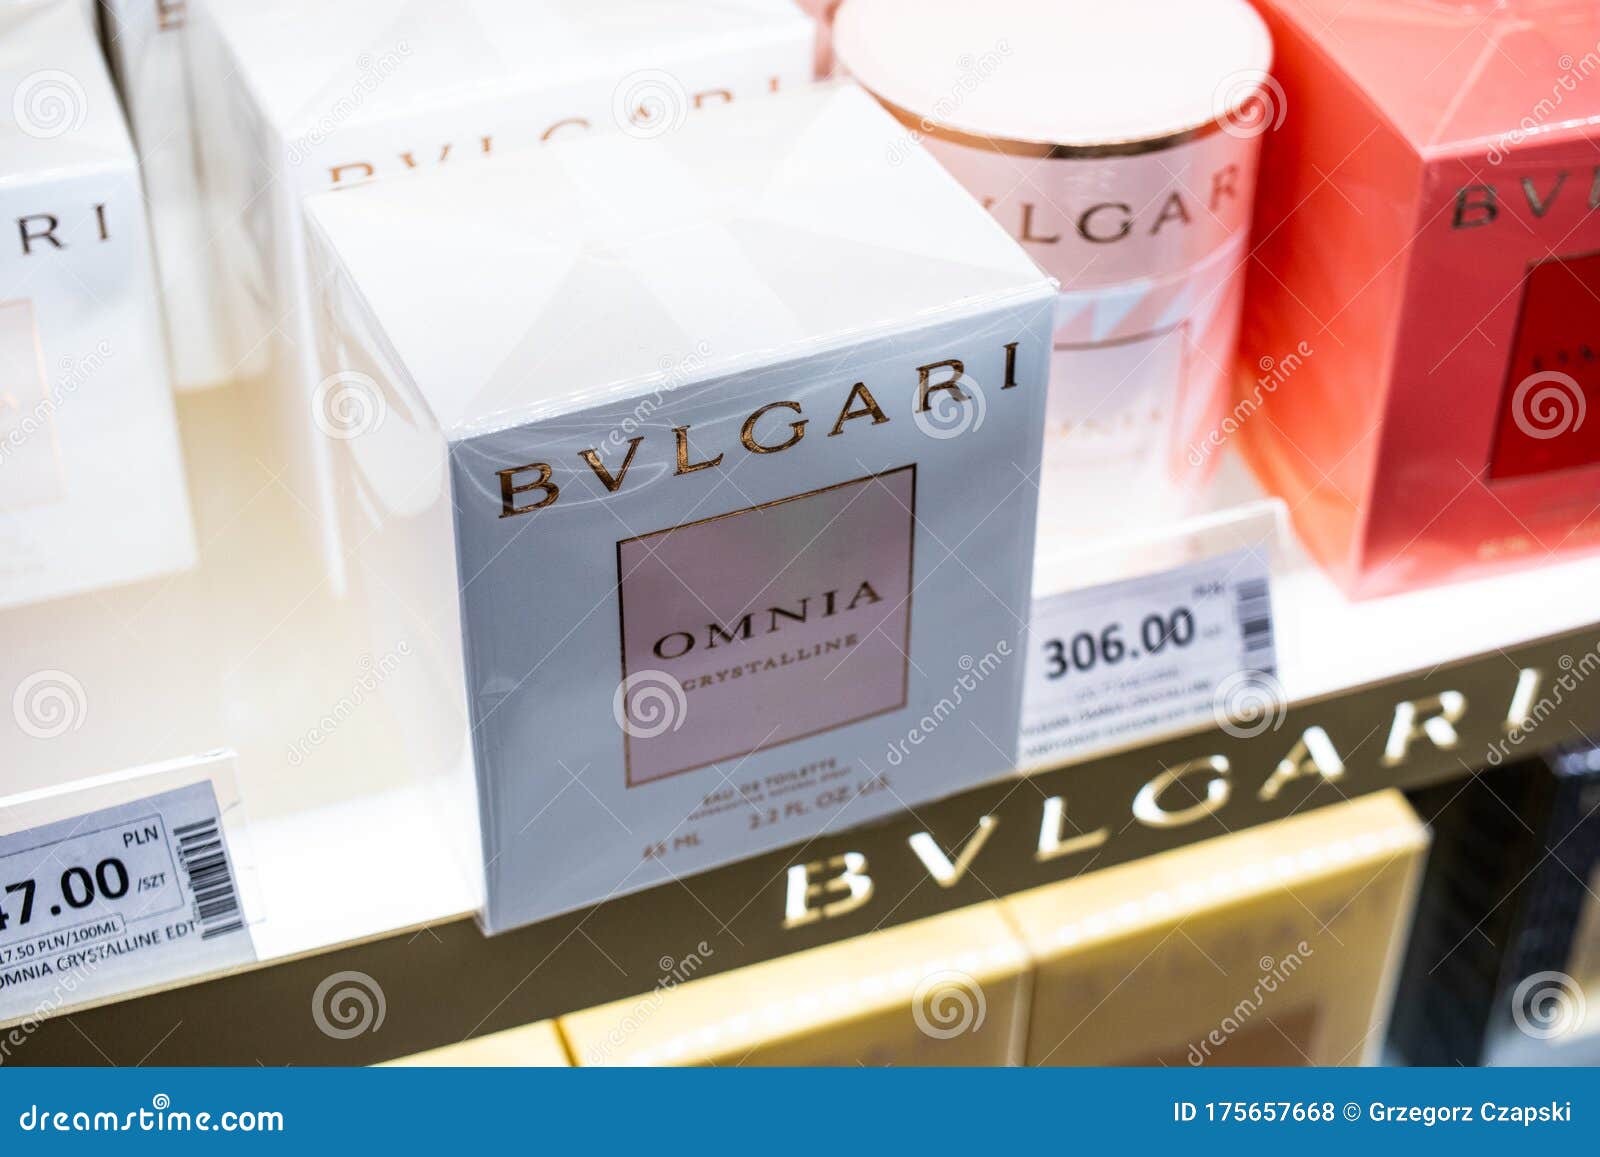 Italian Luxury Brand BVLGARI - Bulgari 